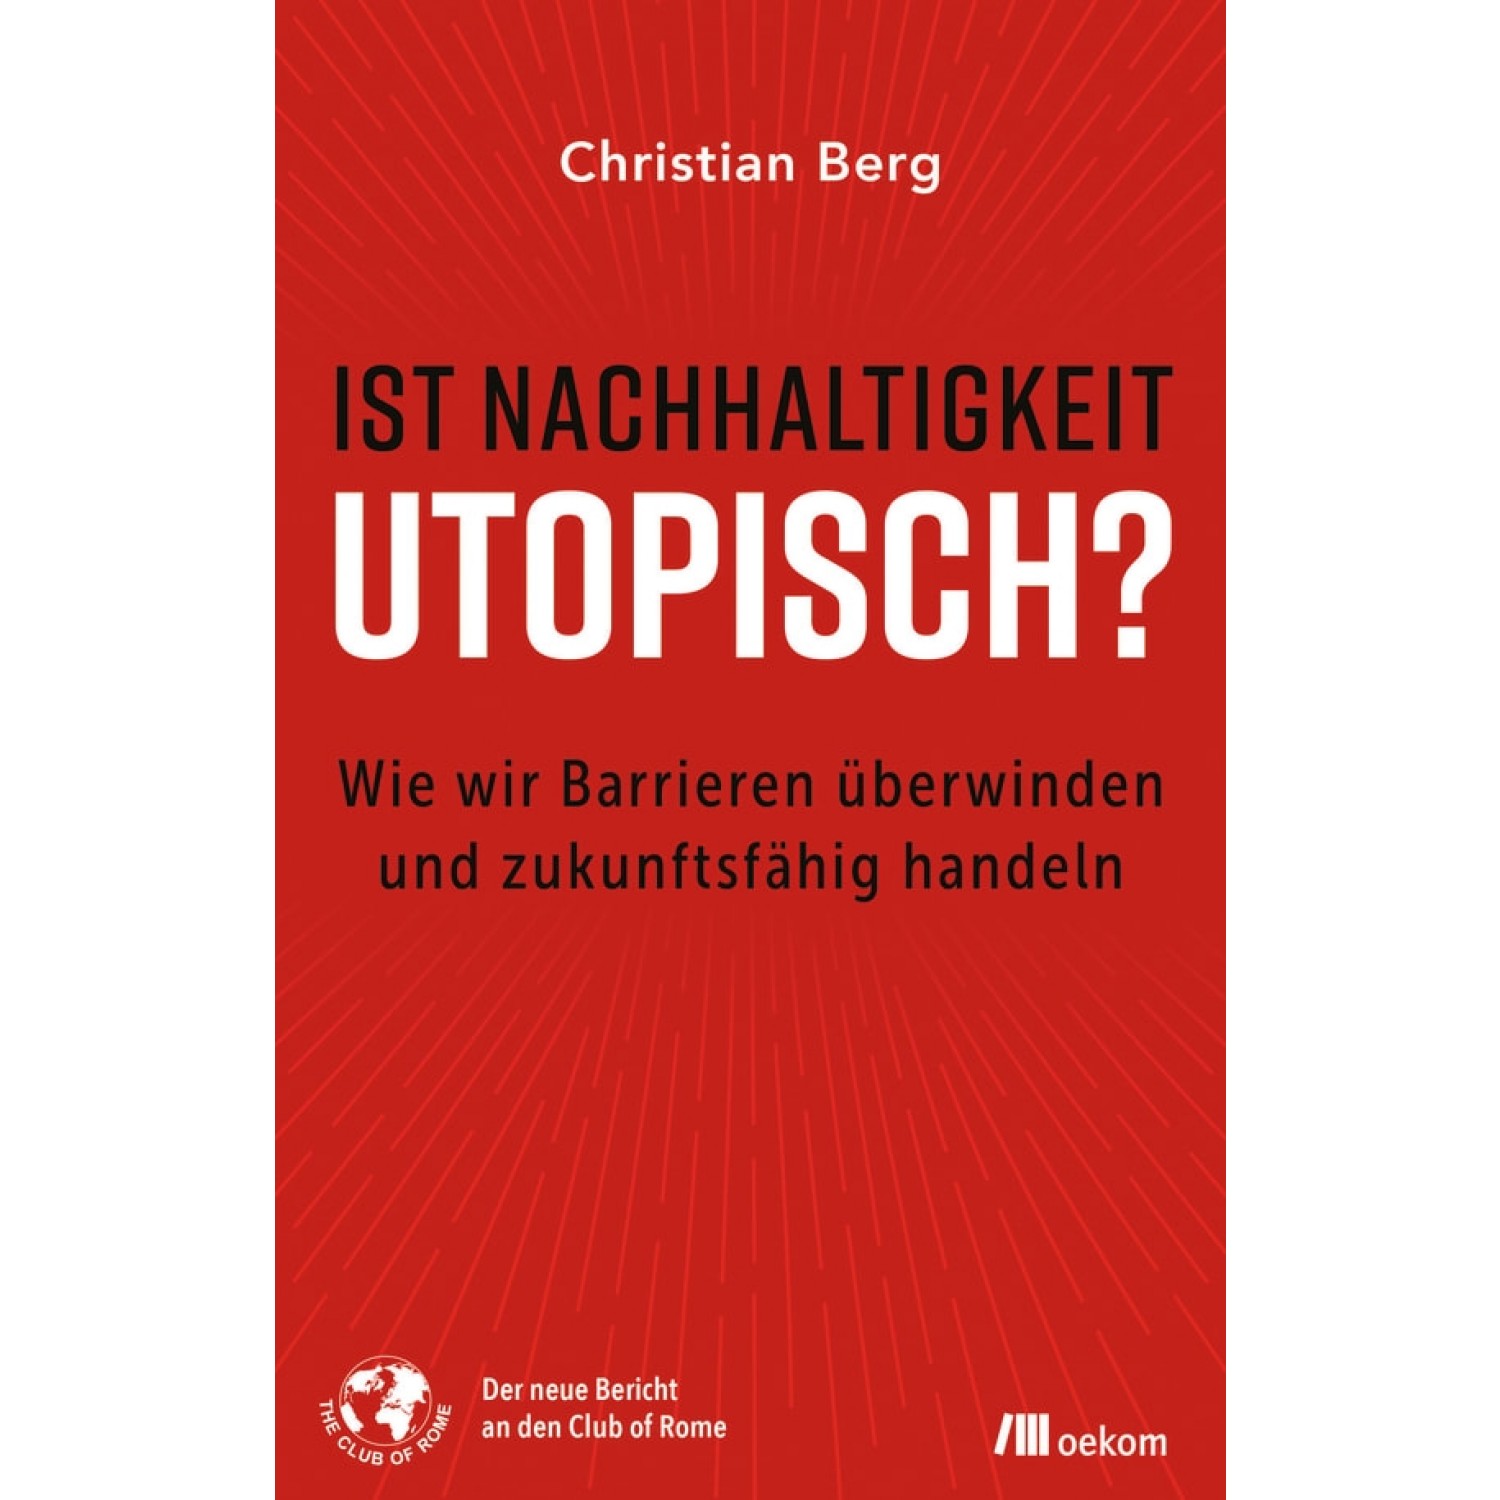 Ist Nachhaltigkeit utopisch? - Christian Berg | oekom Verlag